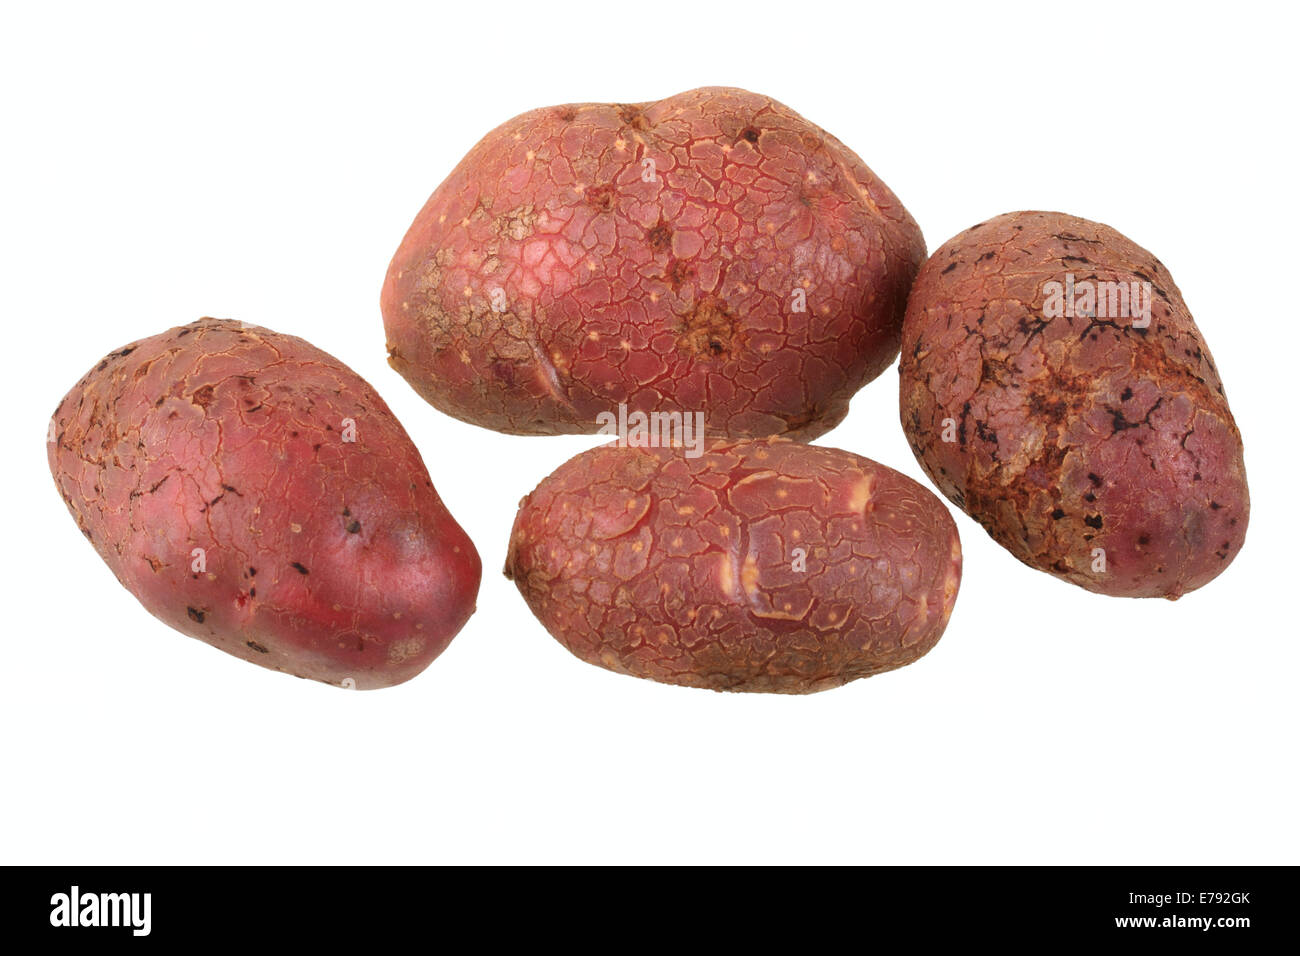 Les pommes de terre, Highland variété rouge bourgogne, Highland Banque D'Images